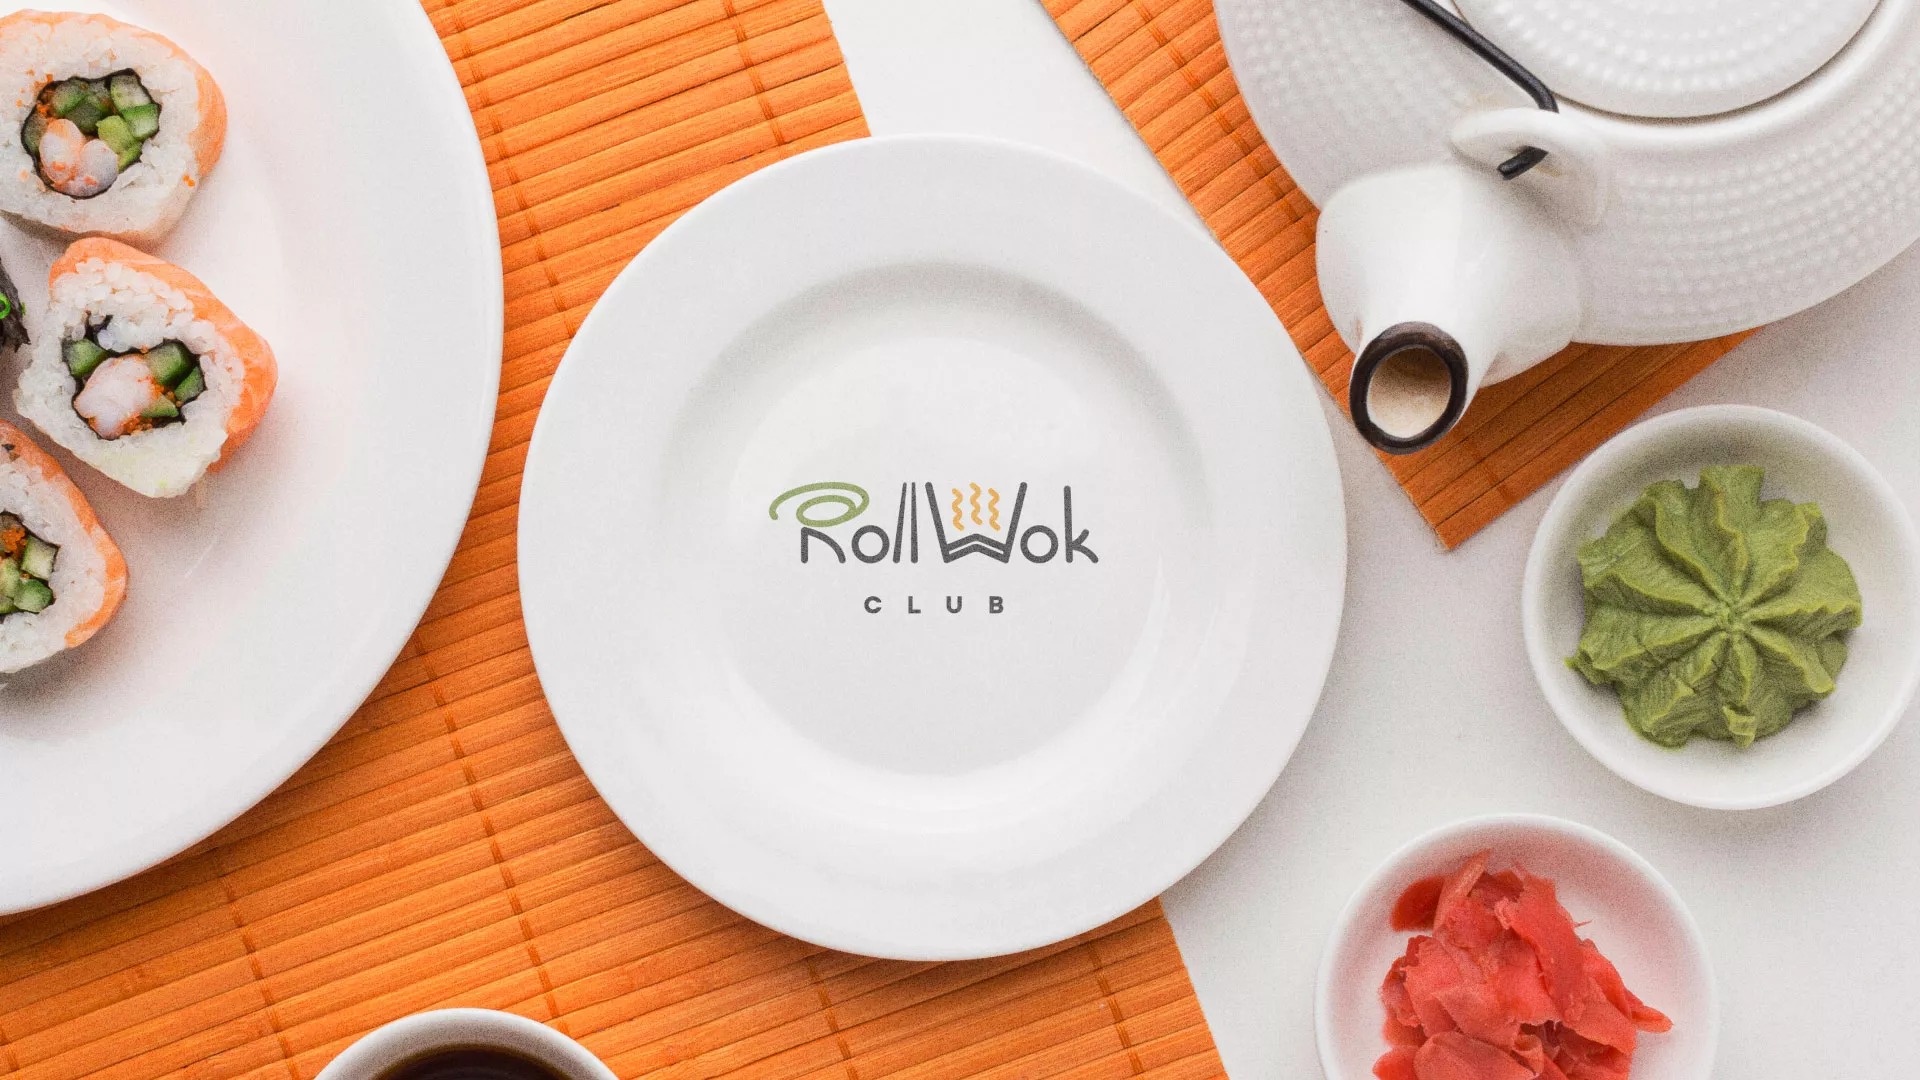 Разработка логотипа и фирменного стиля суши-бара «Roll Wok Club» в Шуе